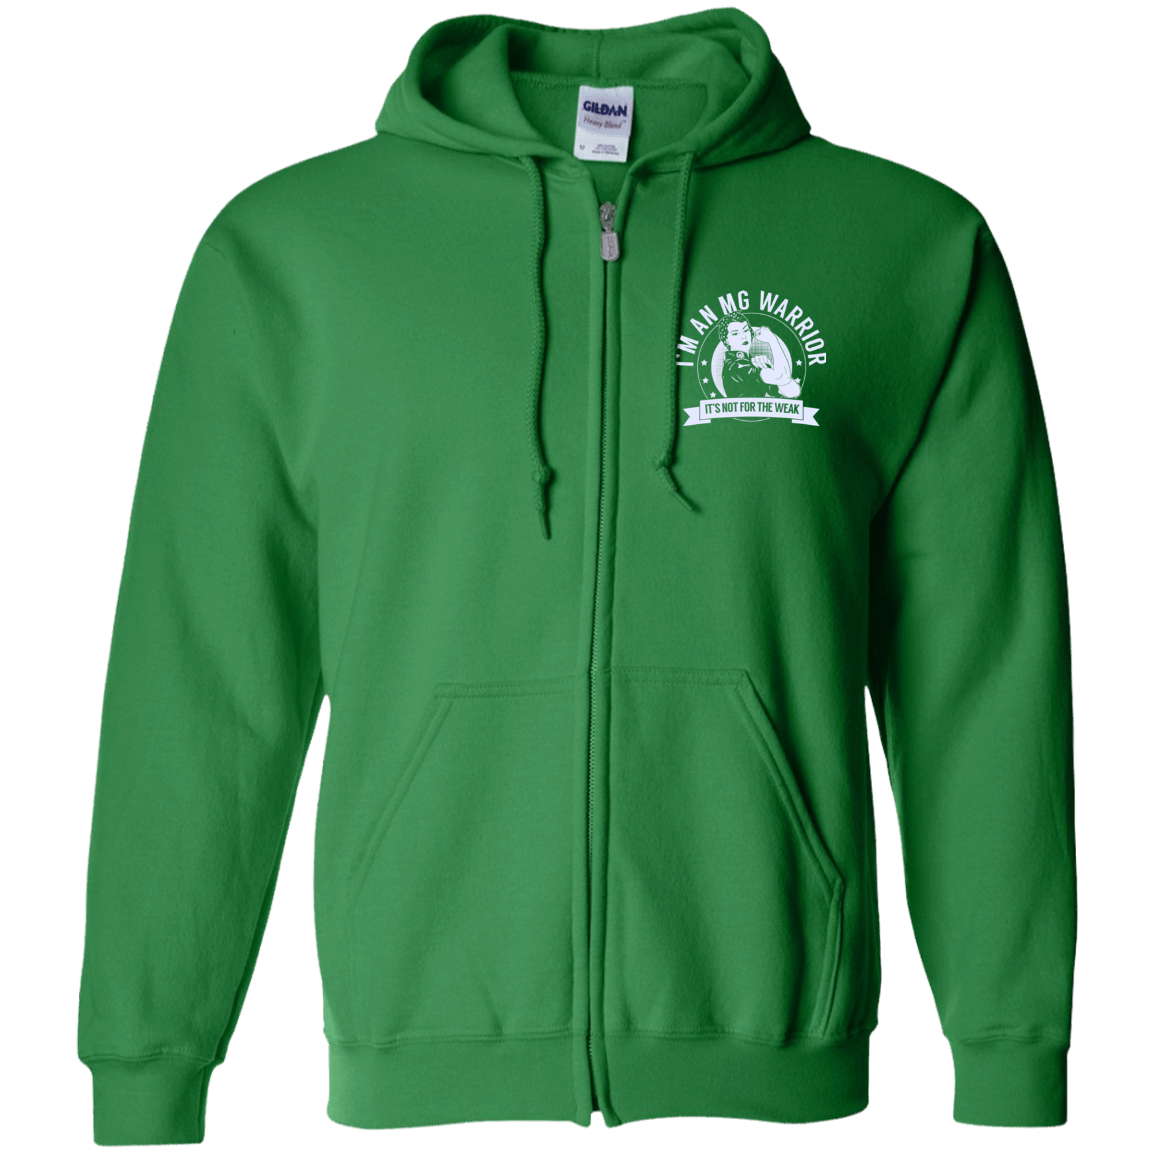 Myasthenia Gravis - MG Warrior NFTW Zip Up Hooded Sweatshirt - The Unchargeables